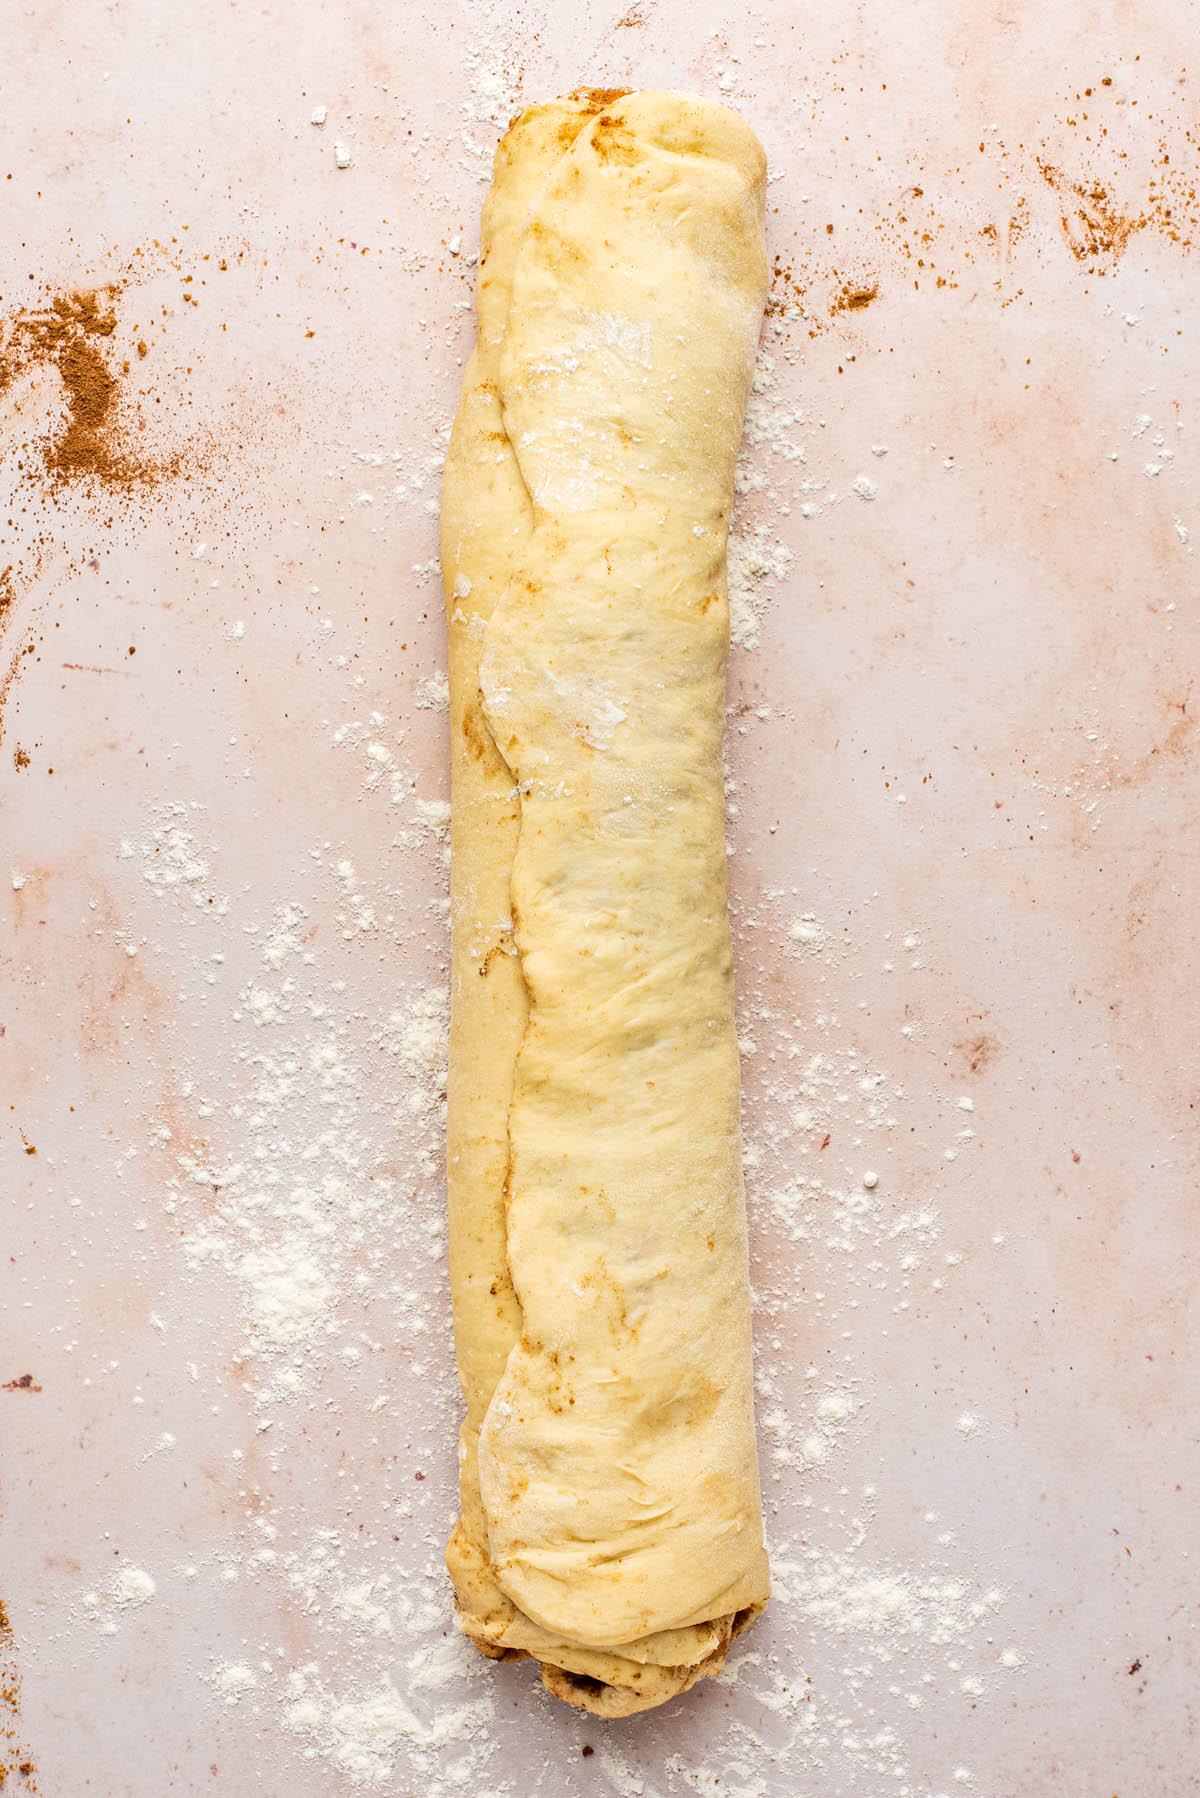 Log of dough, seam side up.